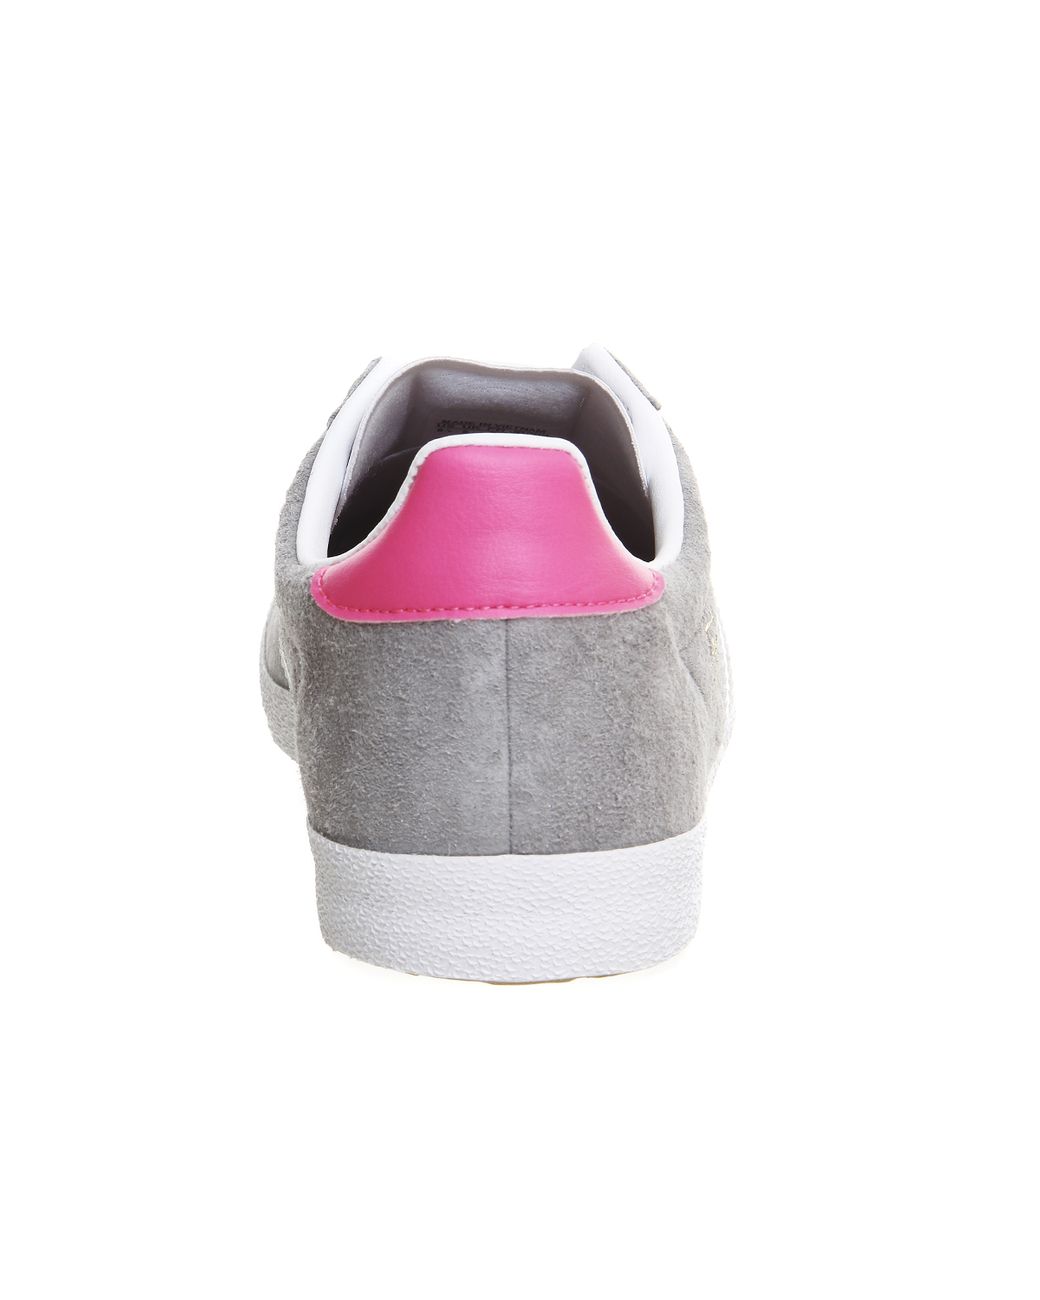 adidas Originals Suede Gazelle Og W in Grey (Gray) | Lyst